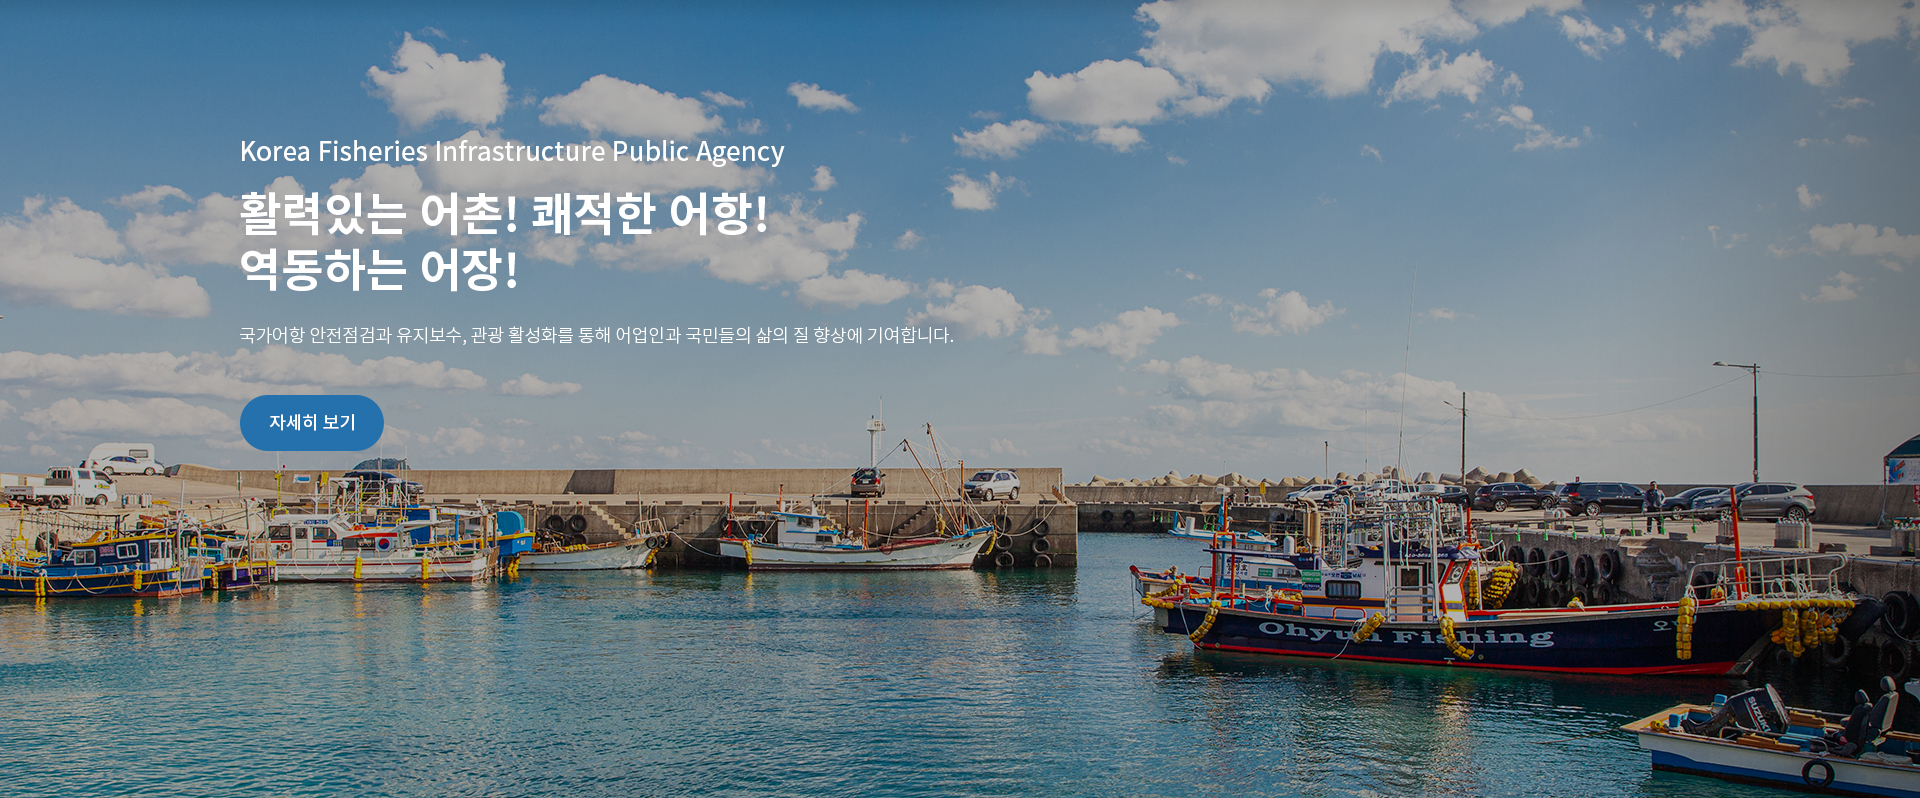 Korea Fisheries Infrastructure Publick Agency
활력있는 어촌! 쾌적한 어항!
역동하는 어장!
국가어항 안전점검 유지보수, 관광 활성화를 통해 어업인과 국민들의 삶의 질 향상에 기여합니다. | 자세히 보기